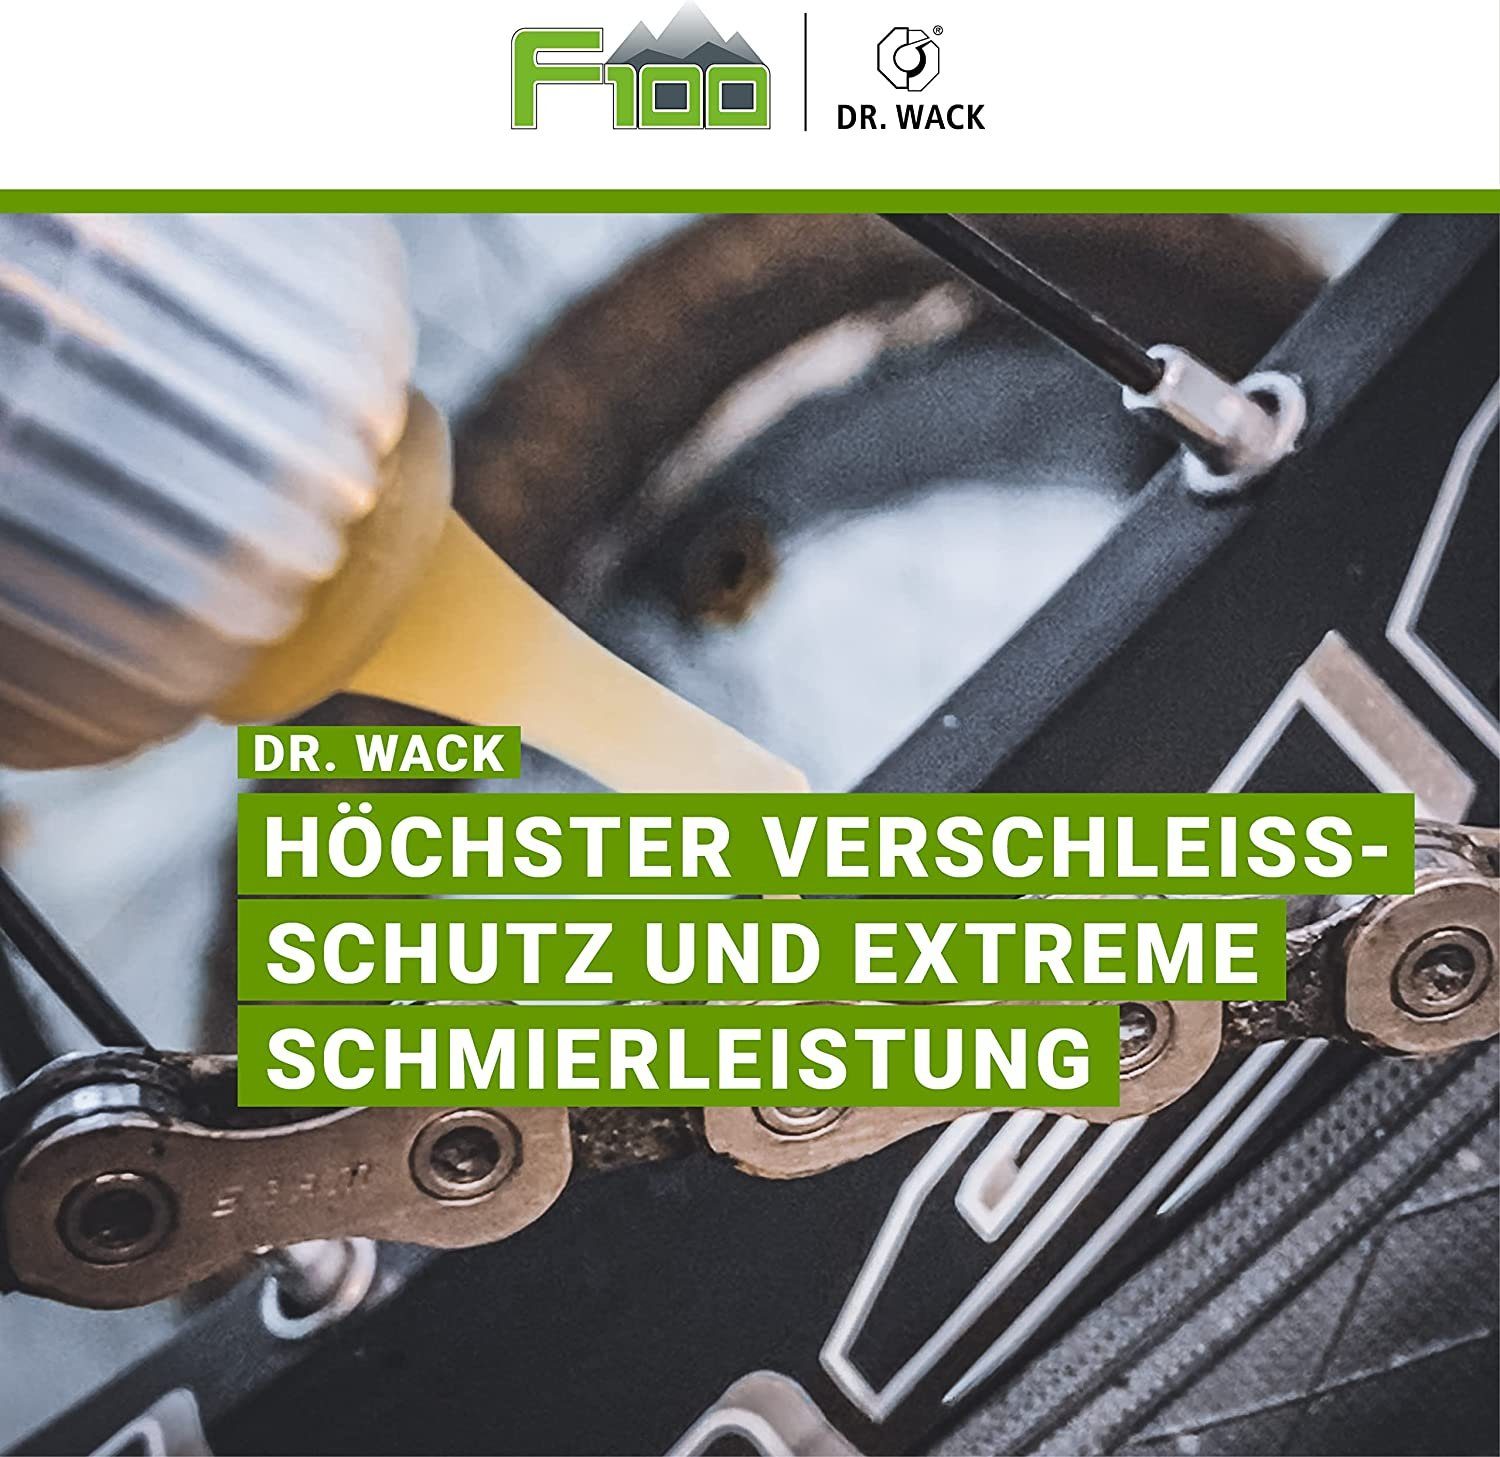 DR WACK Fahrrad-Montageständer Dr.Wack F100 Pflege Fahrrad 50ml Road Kettenöl Ebike MTB